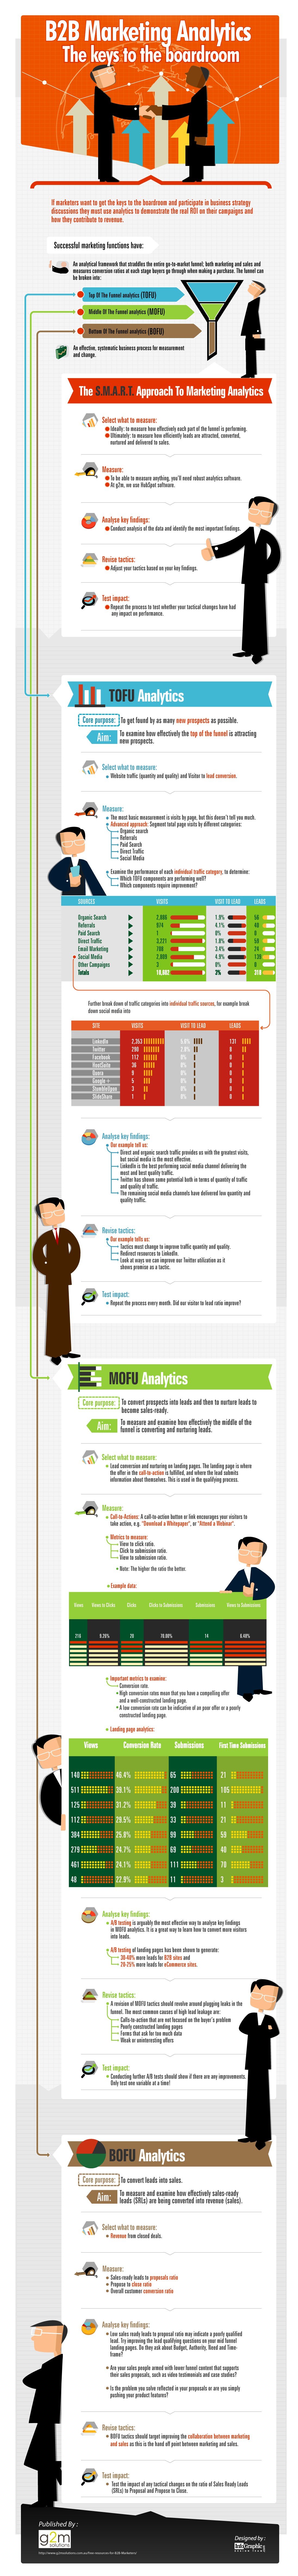 marketing analytics infographic